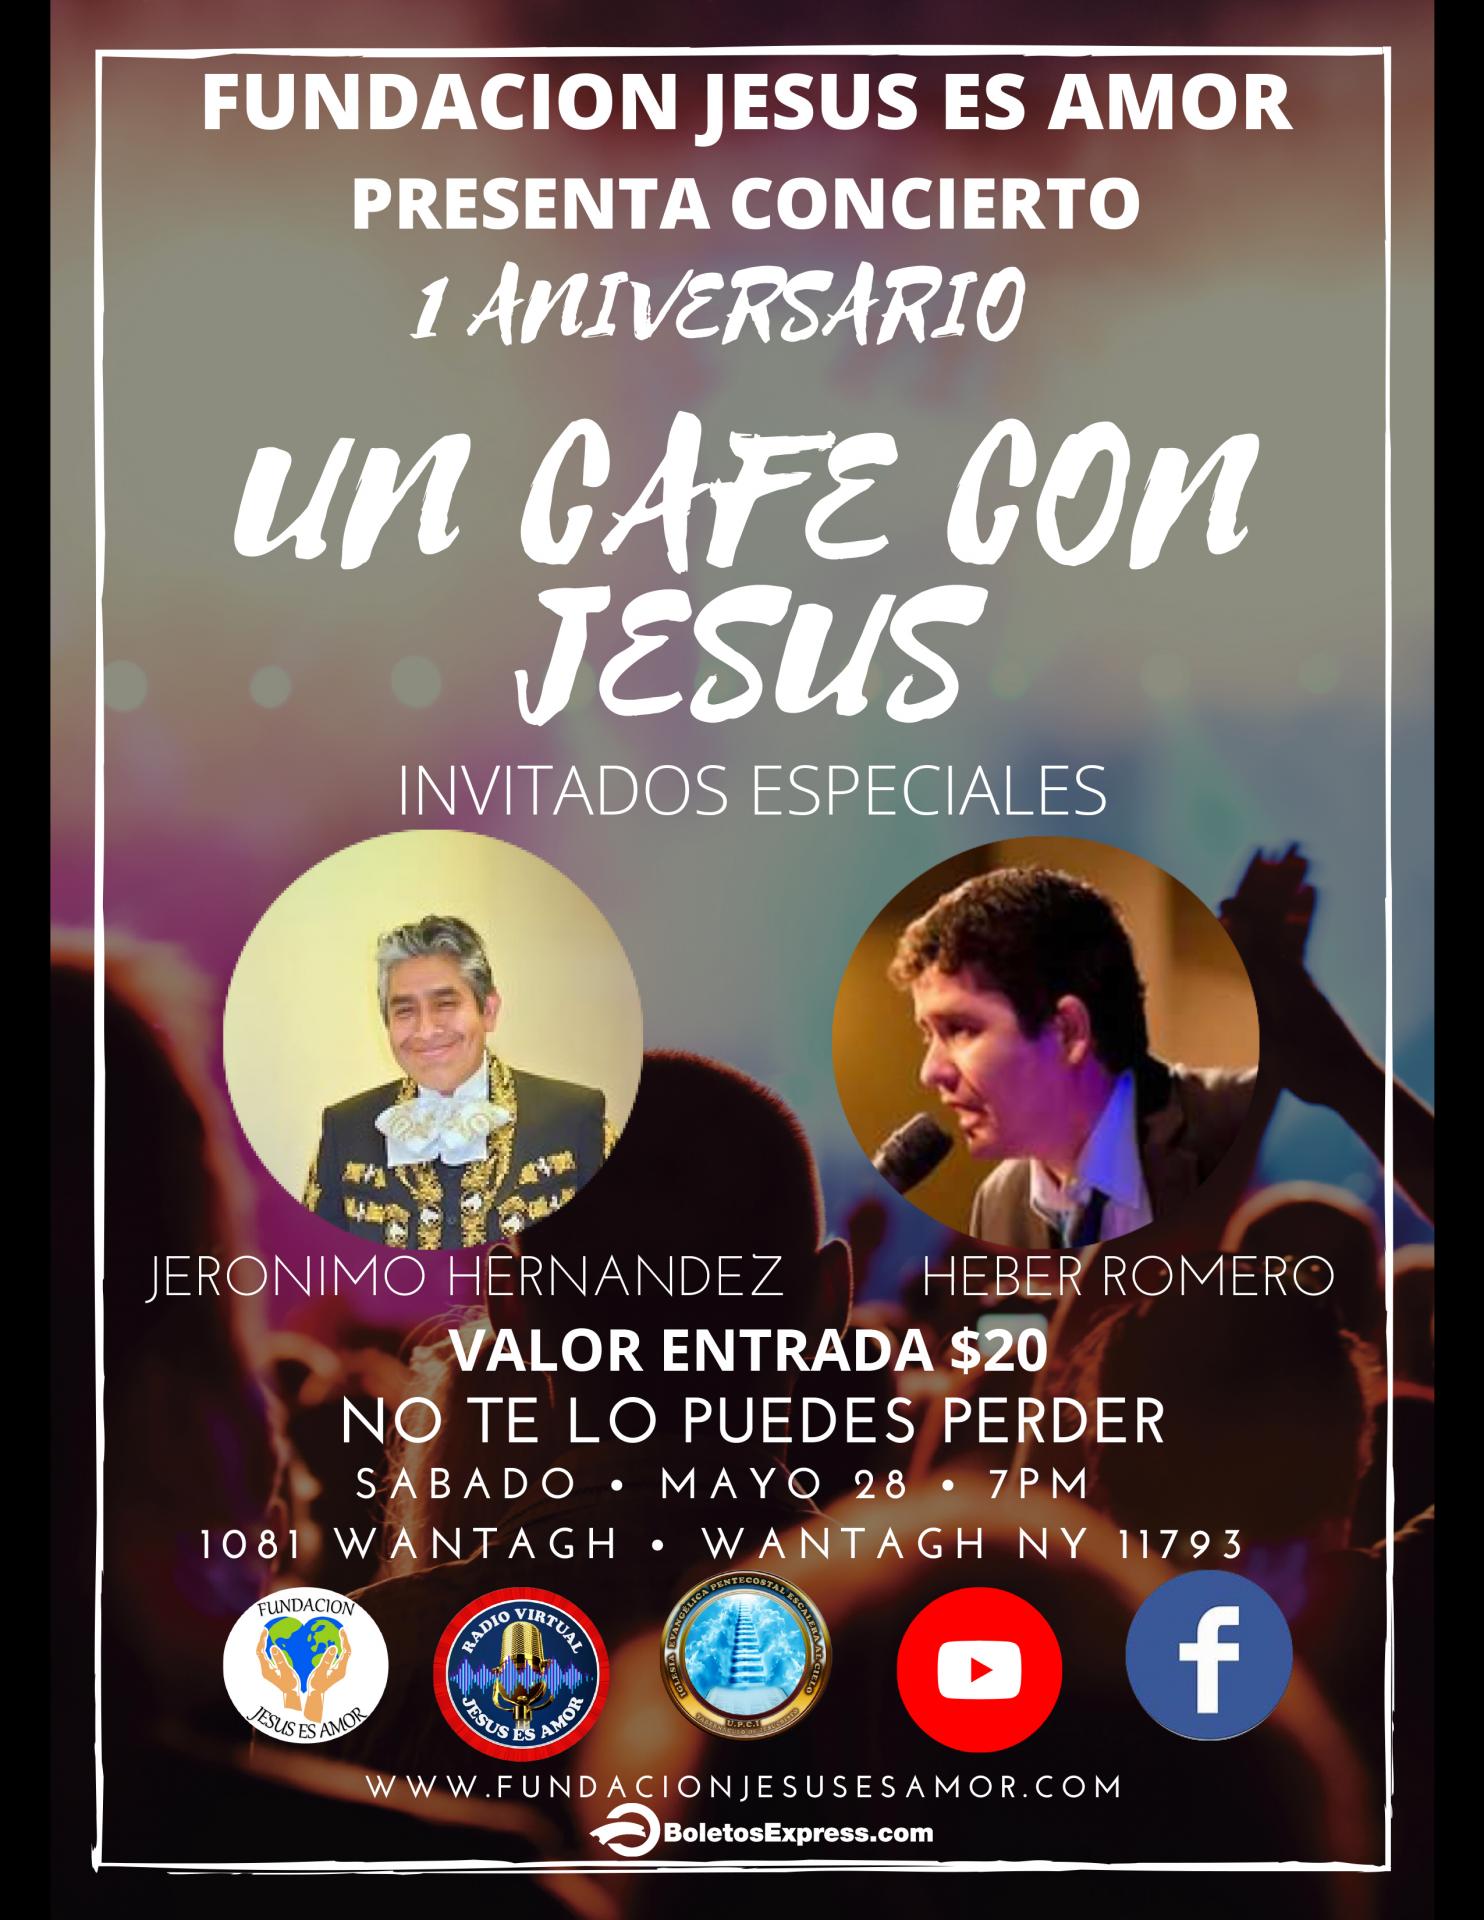 UN CAFE CON JESUS - 1 ANIVERSARIO